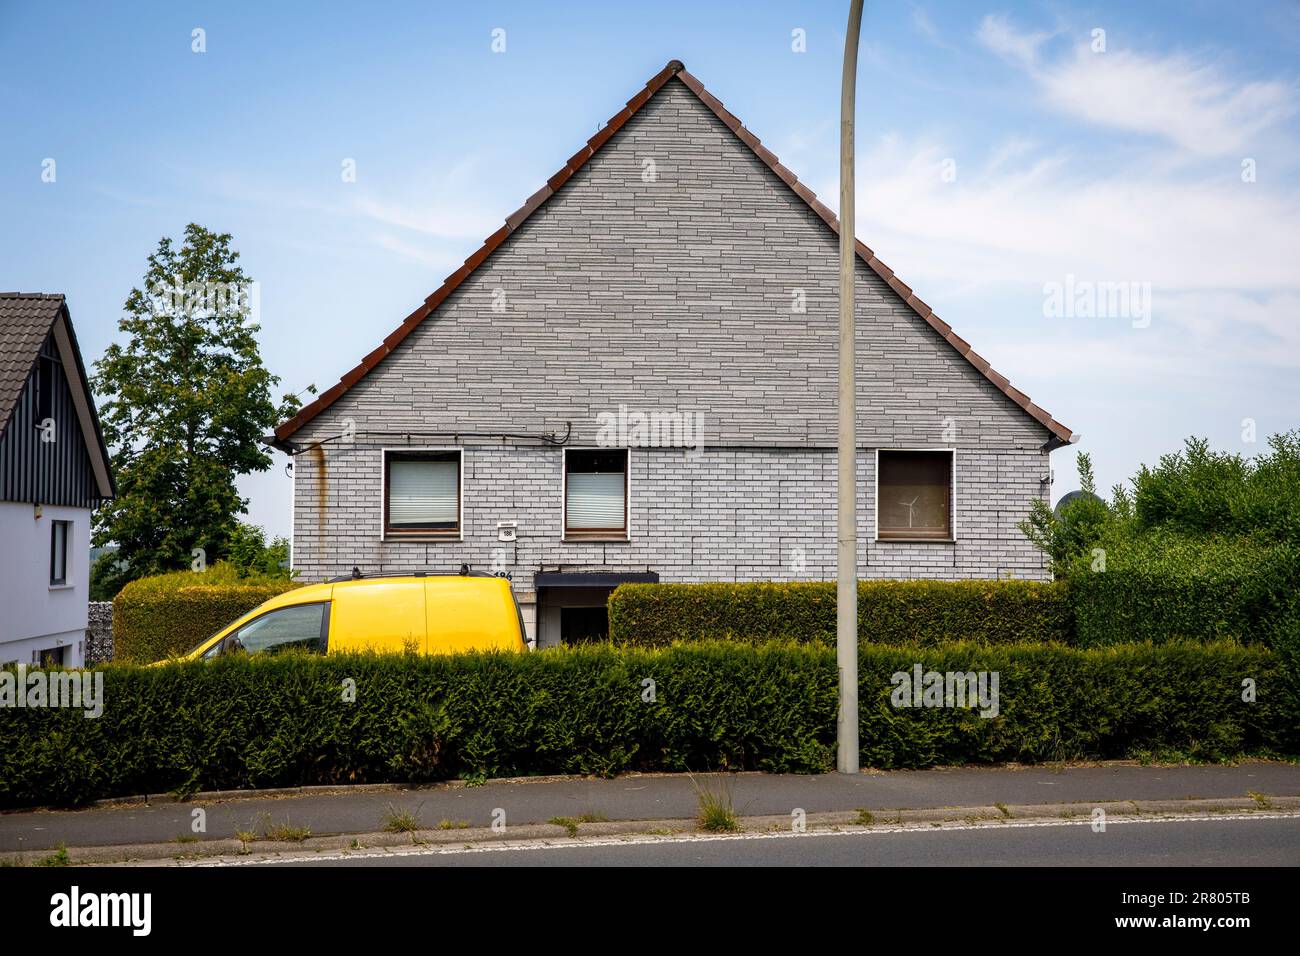 Un'auto gialla si trova dietro una siepe di fronte a una casa in mattoni grigi a Gevelsberg-Silschede, Renania settentrionale-Vestfalia, Germania. ein gelbes Auto steht suggerimento Foto Stock